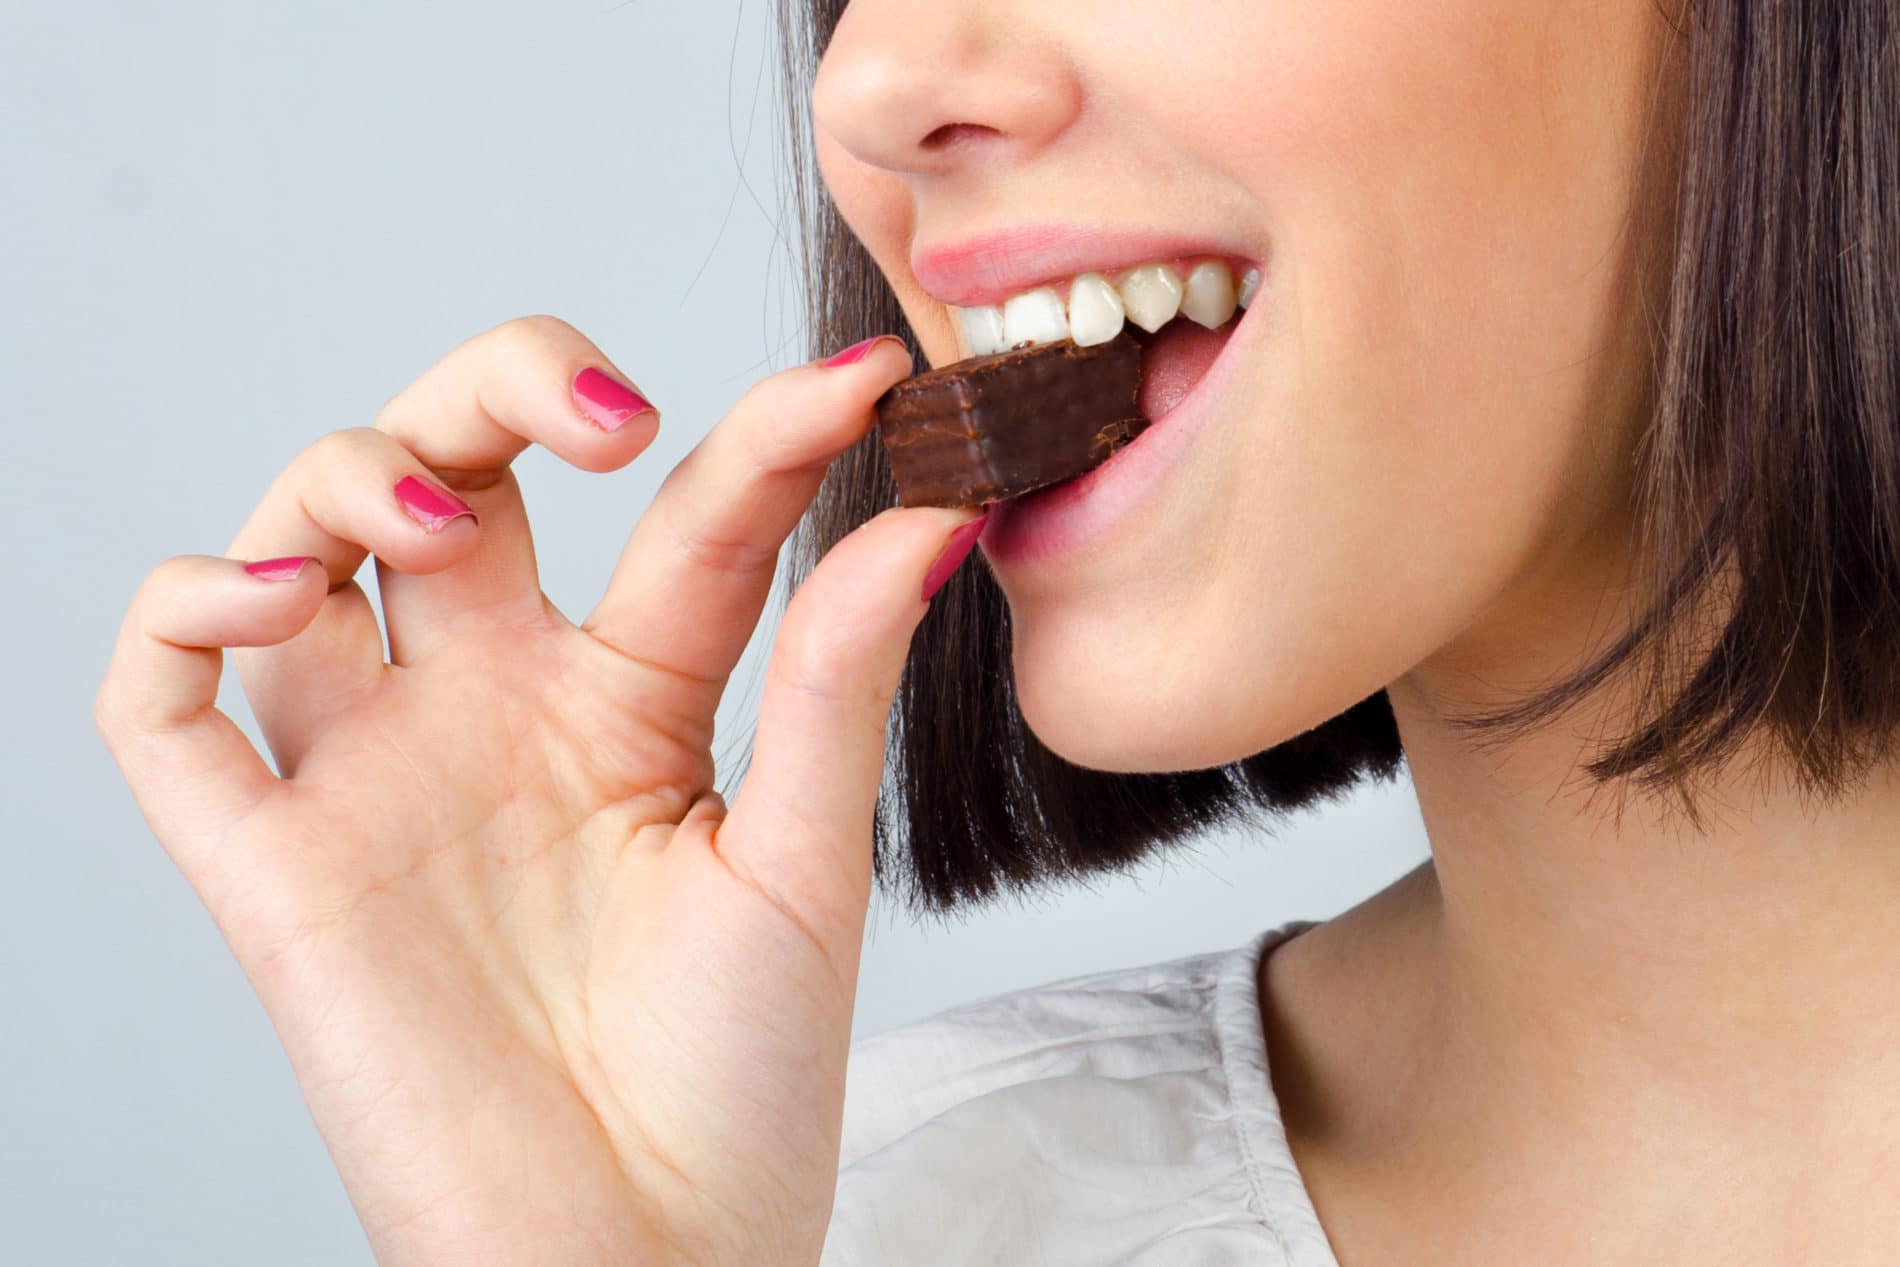 girl enjoying her chocolate bite